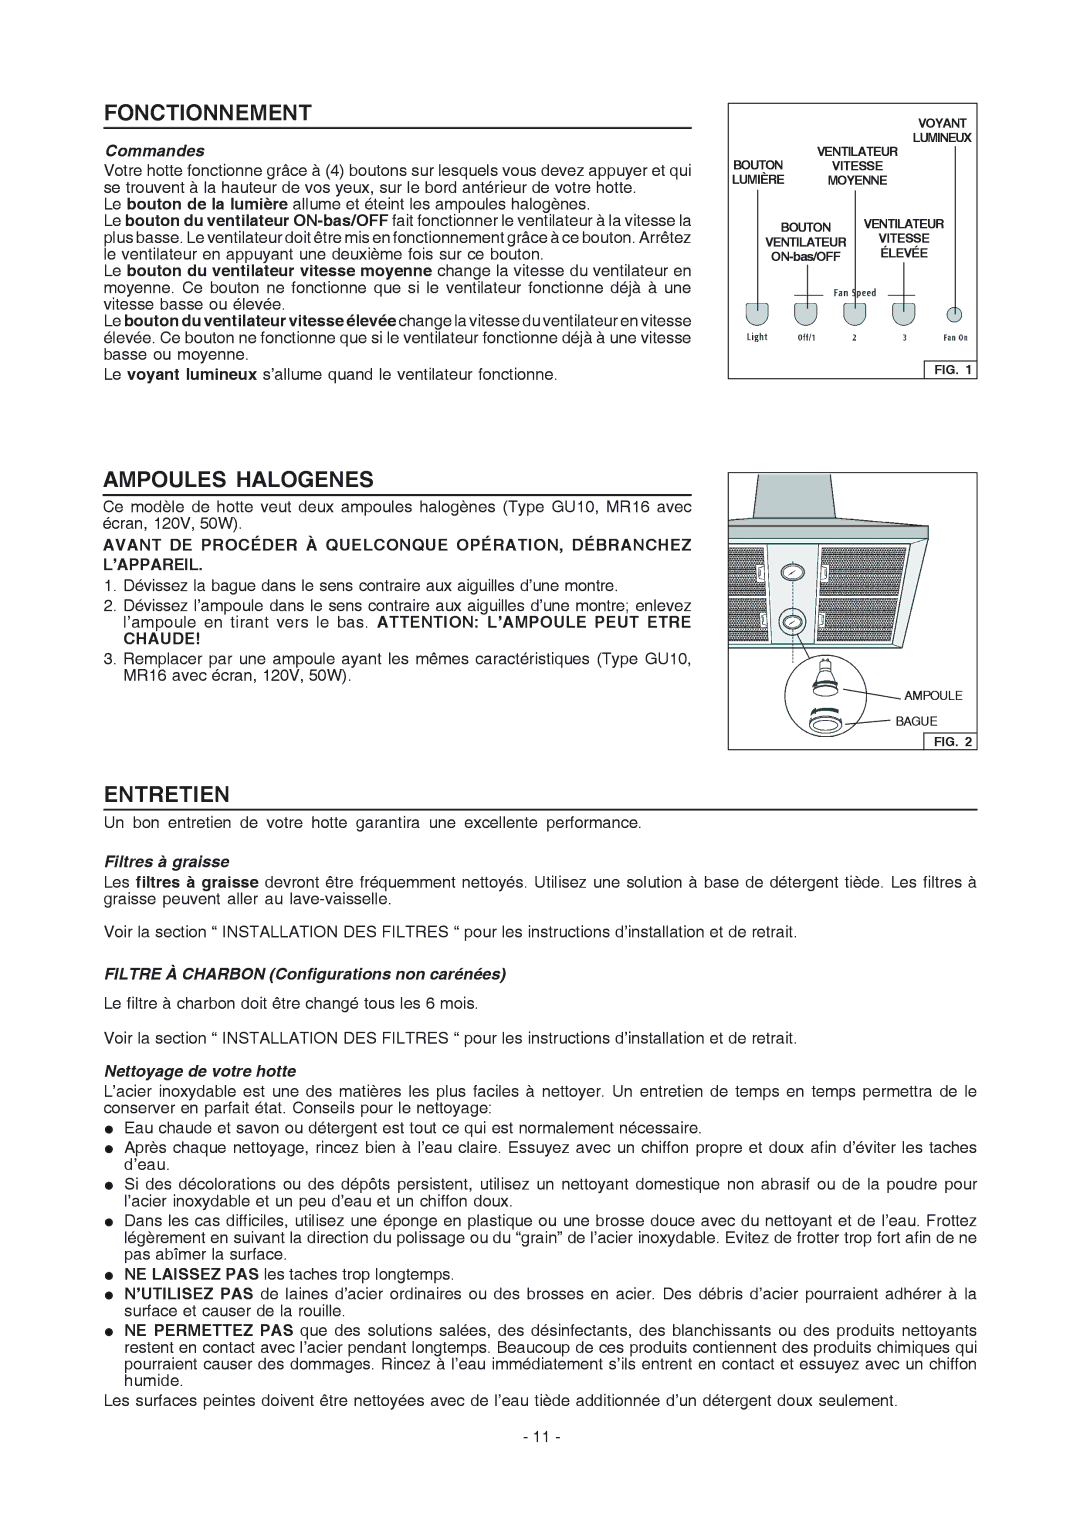 Frigidaire PL36PC50EC manual Fonctionnement, Ampoules Halogenes, Entretien 